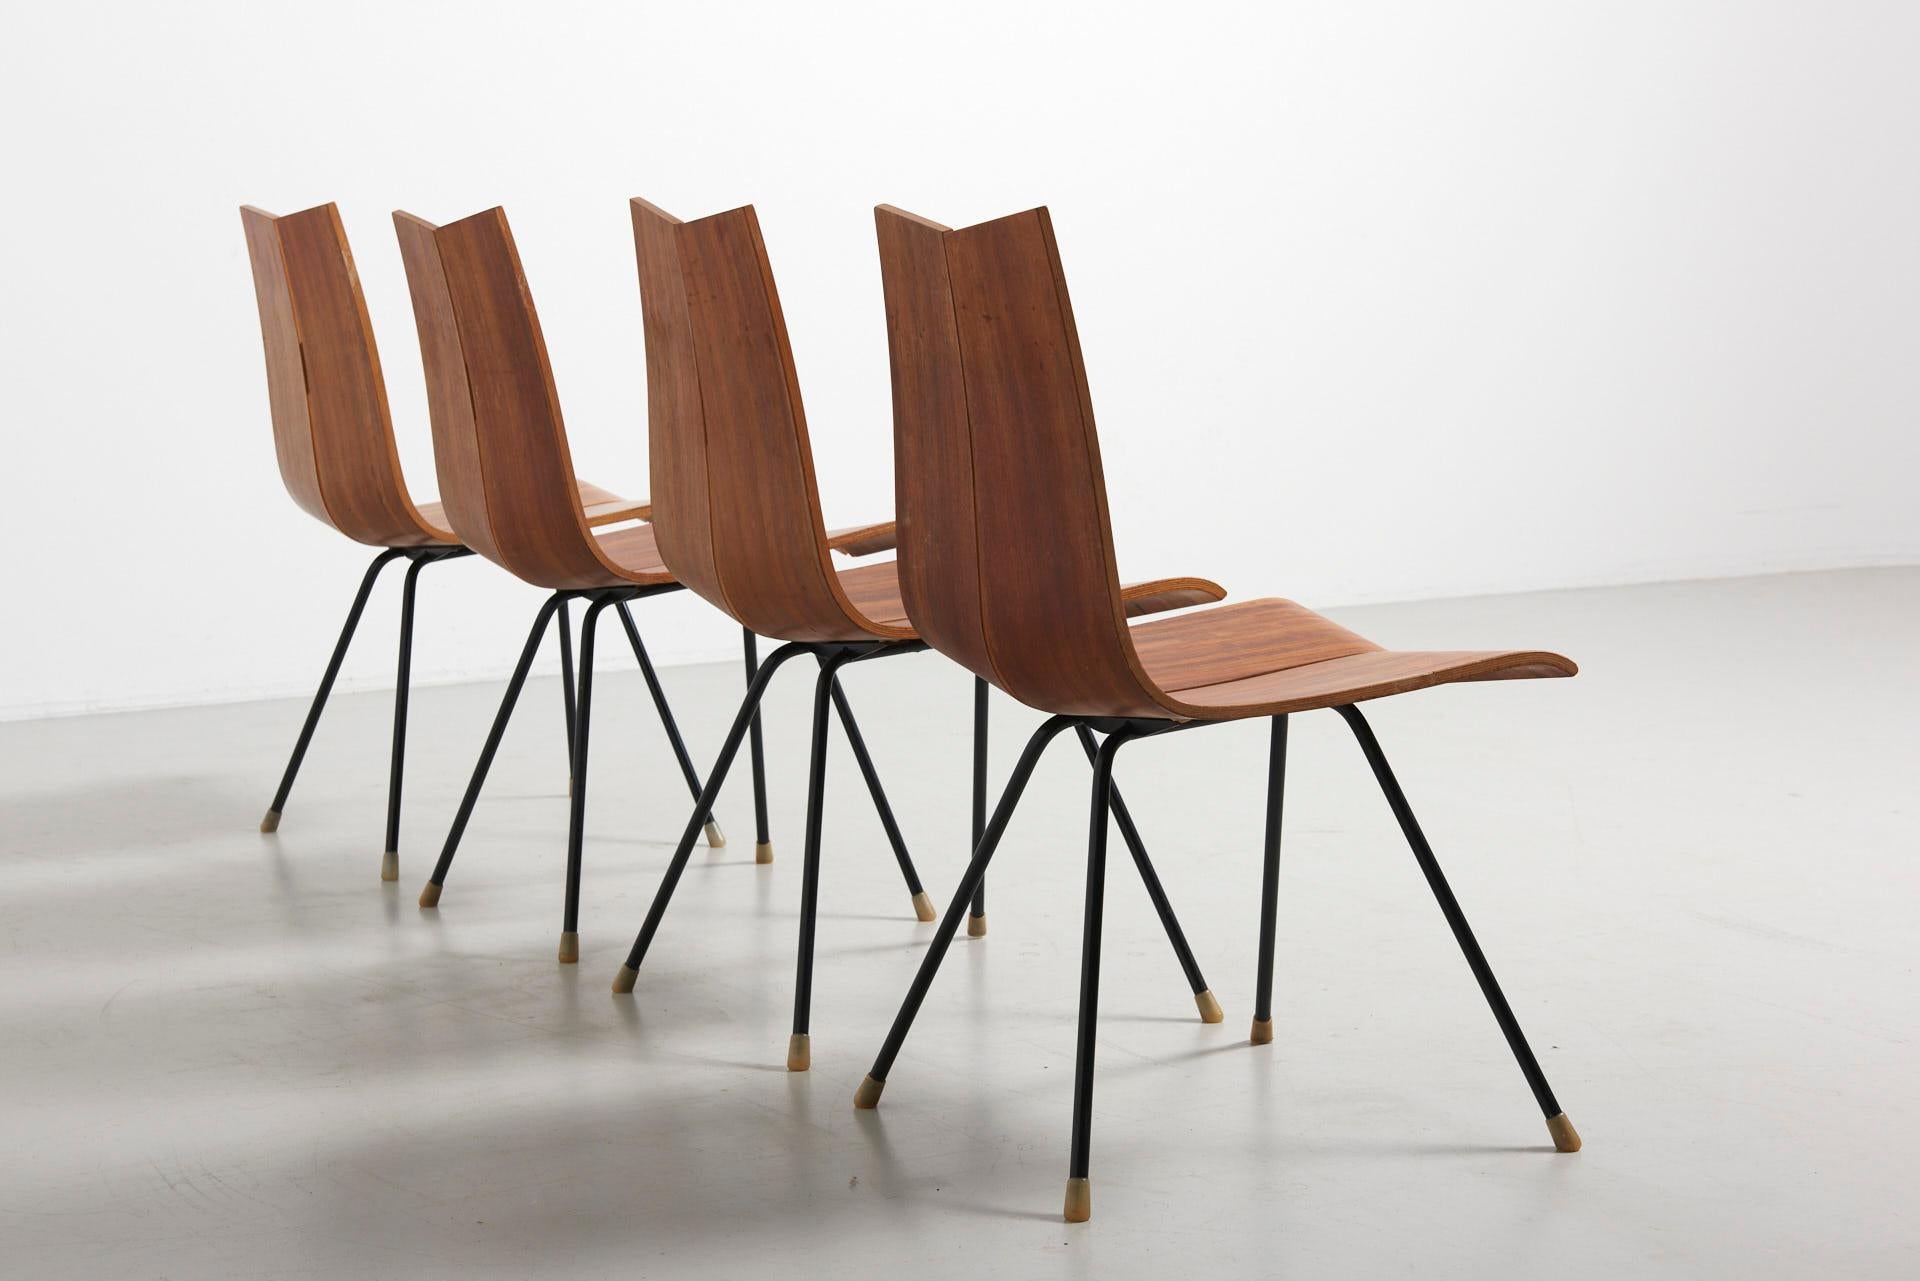 Swiss 4 'GA' Chairs by Hans Bellmann in 1955, Made by Horgen Glarus in Switzerland